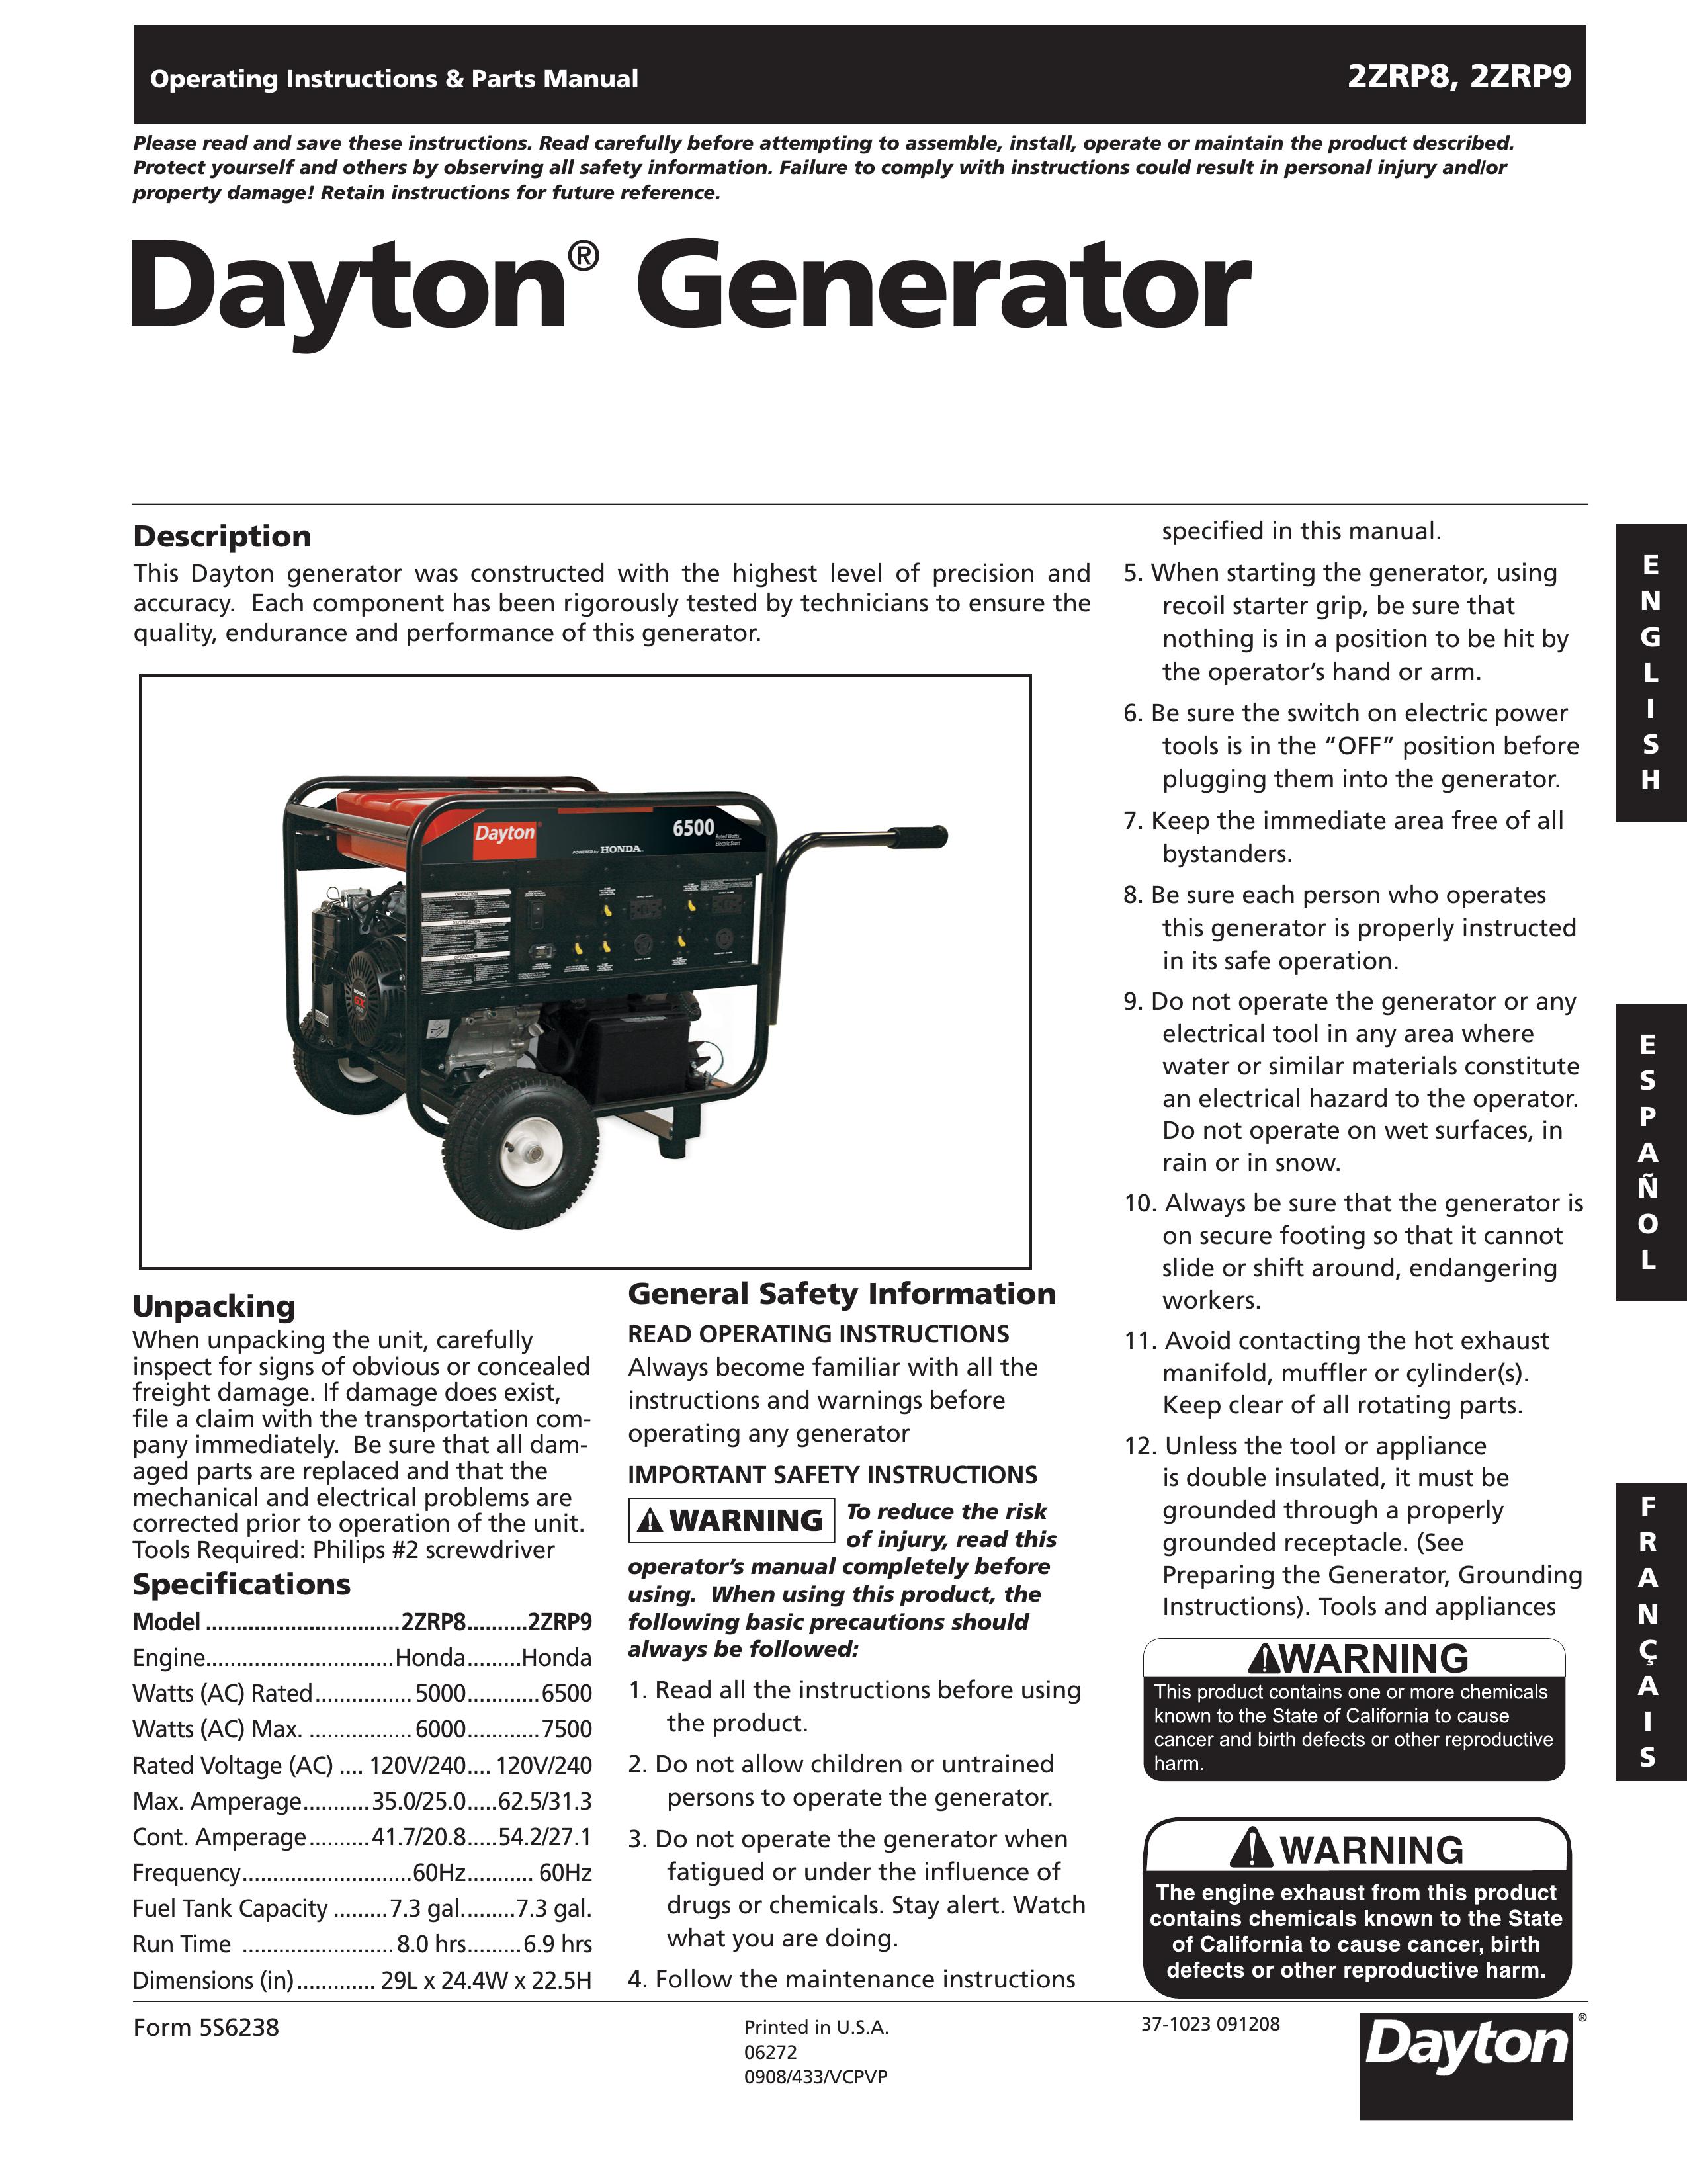 Dayton 2ZRP8 Portable Generator User Manual